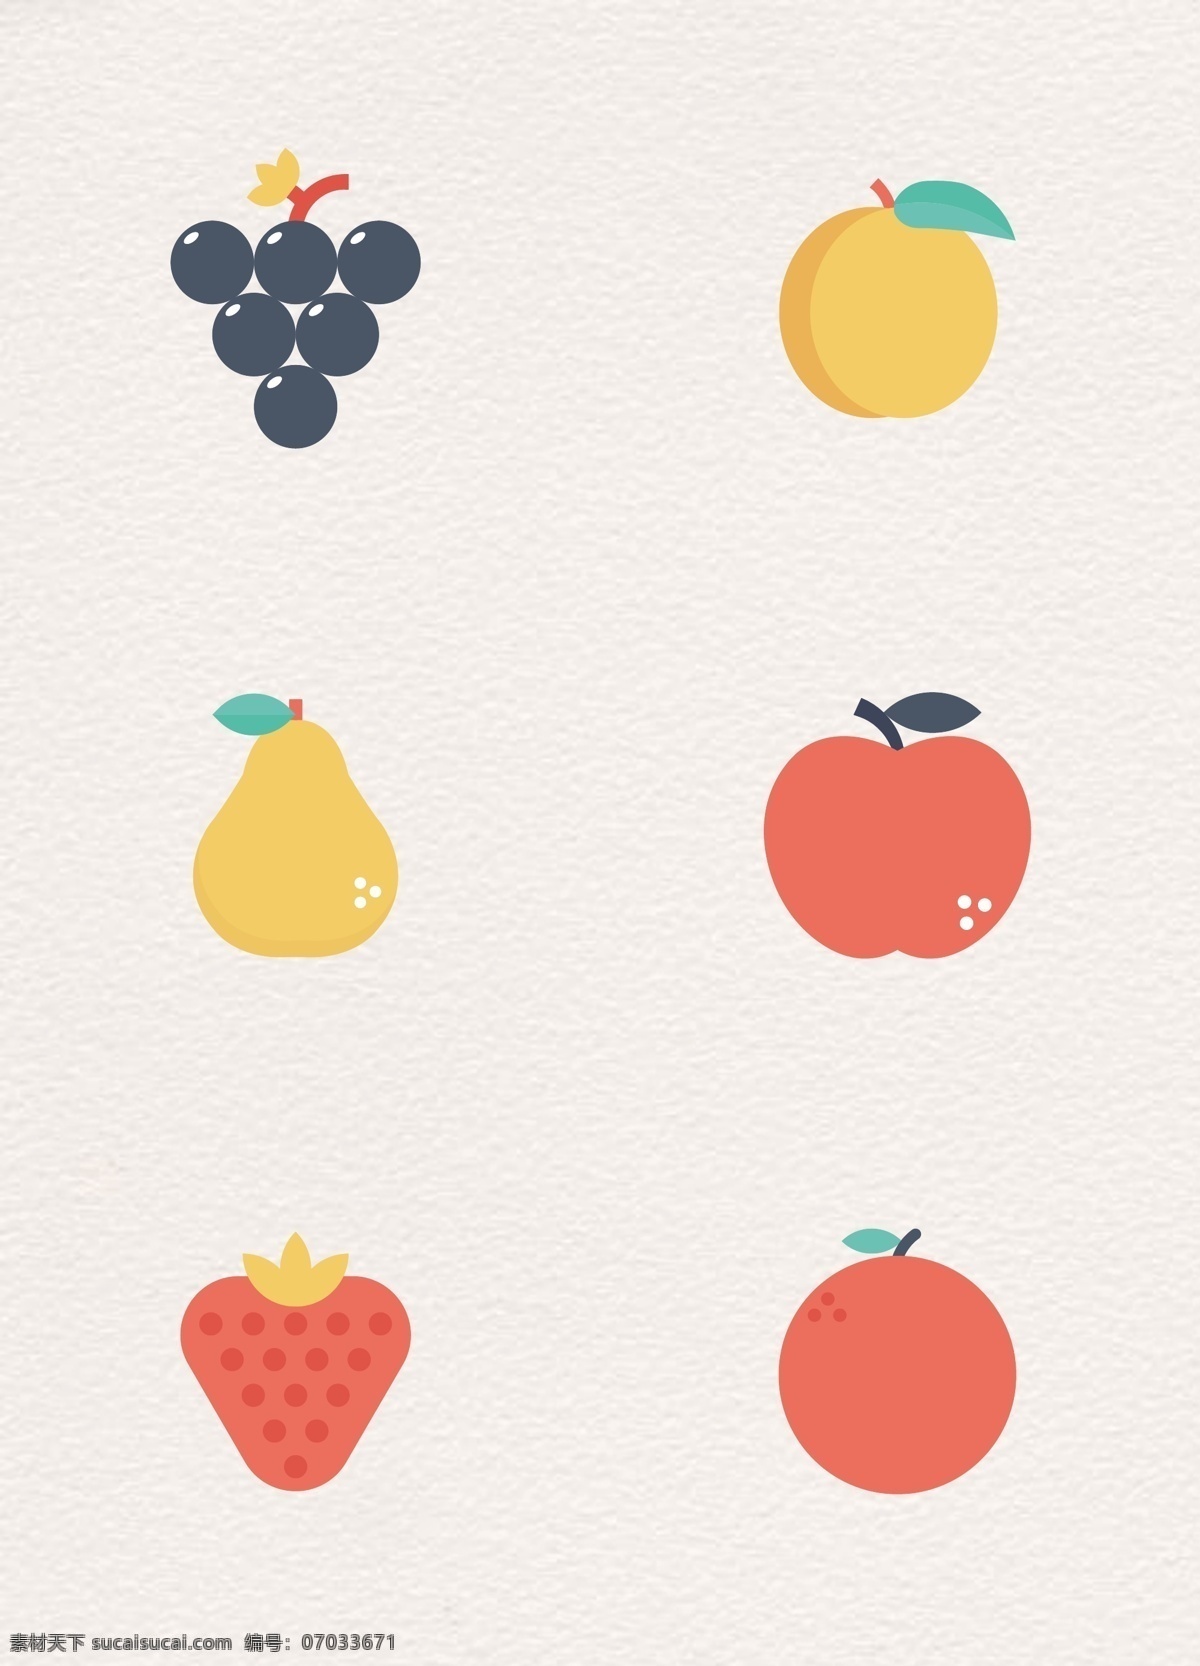 卡通 可爱 水果 矢量 图标 葡萄 苹果 草莓 水果图标 图标元素 黄桃 梨